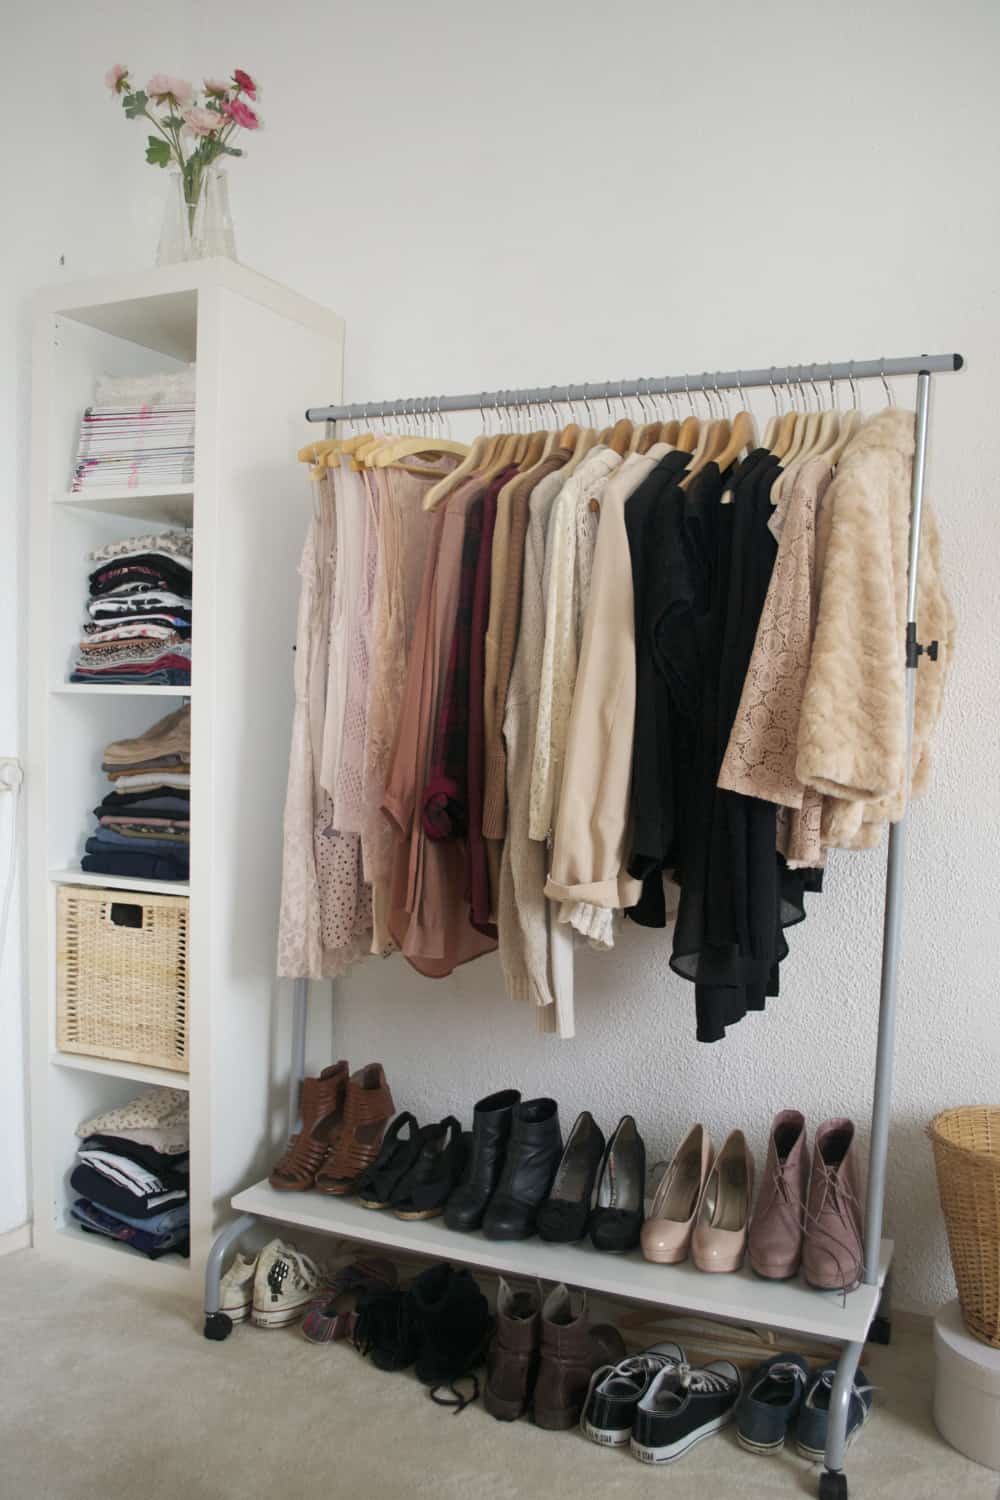 No-closet solution